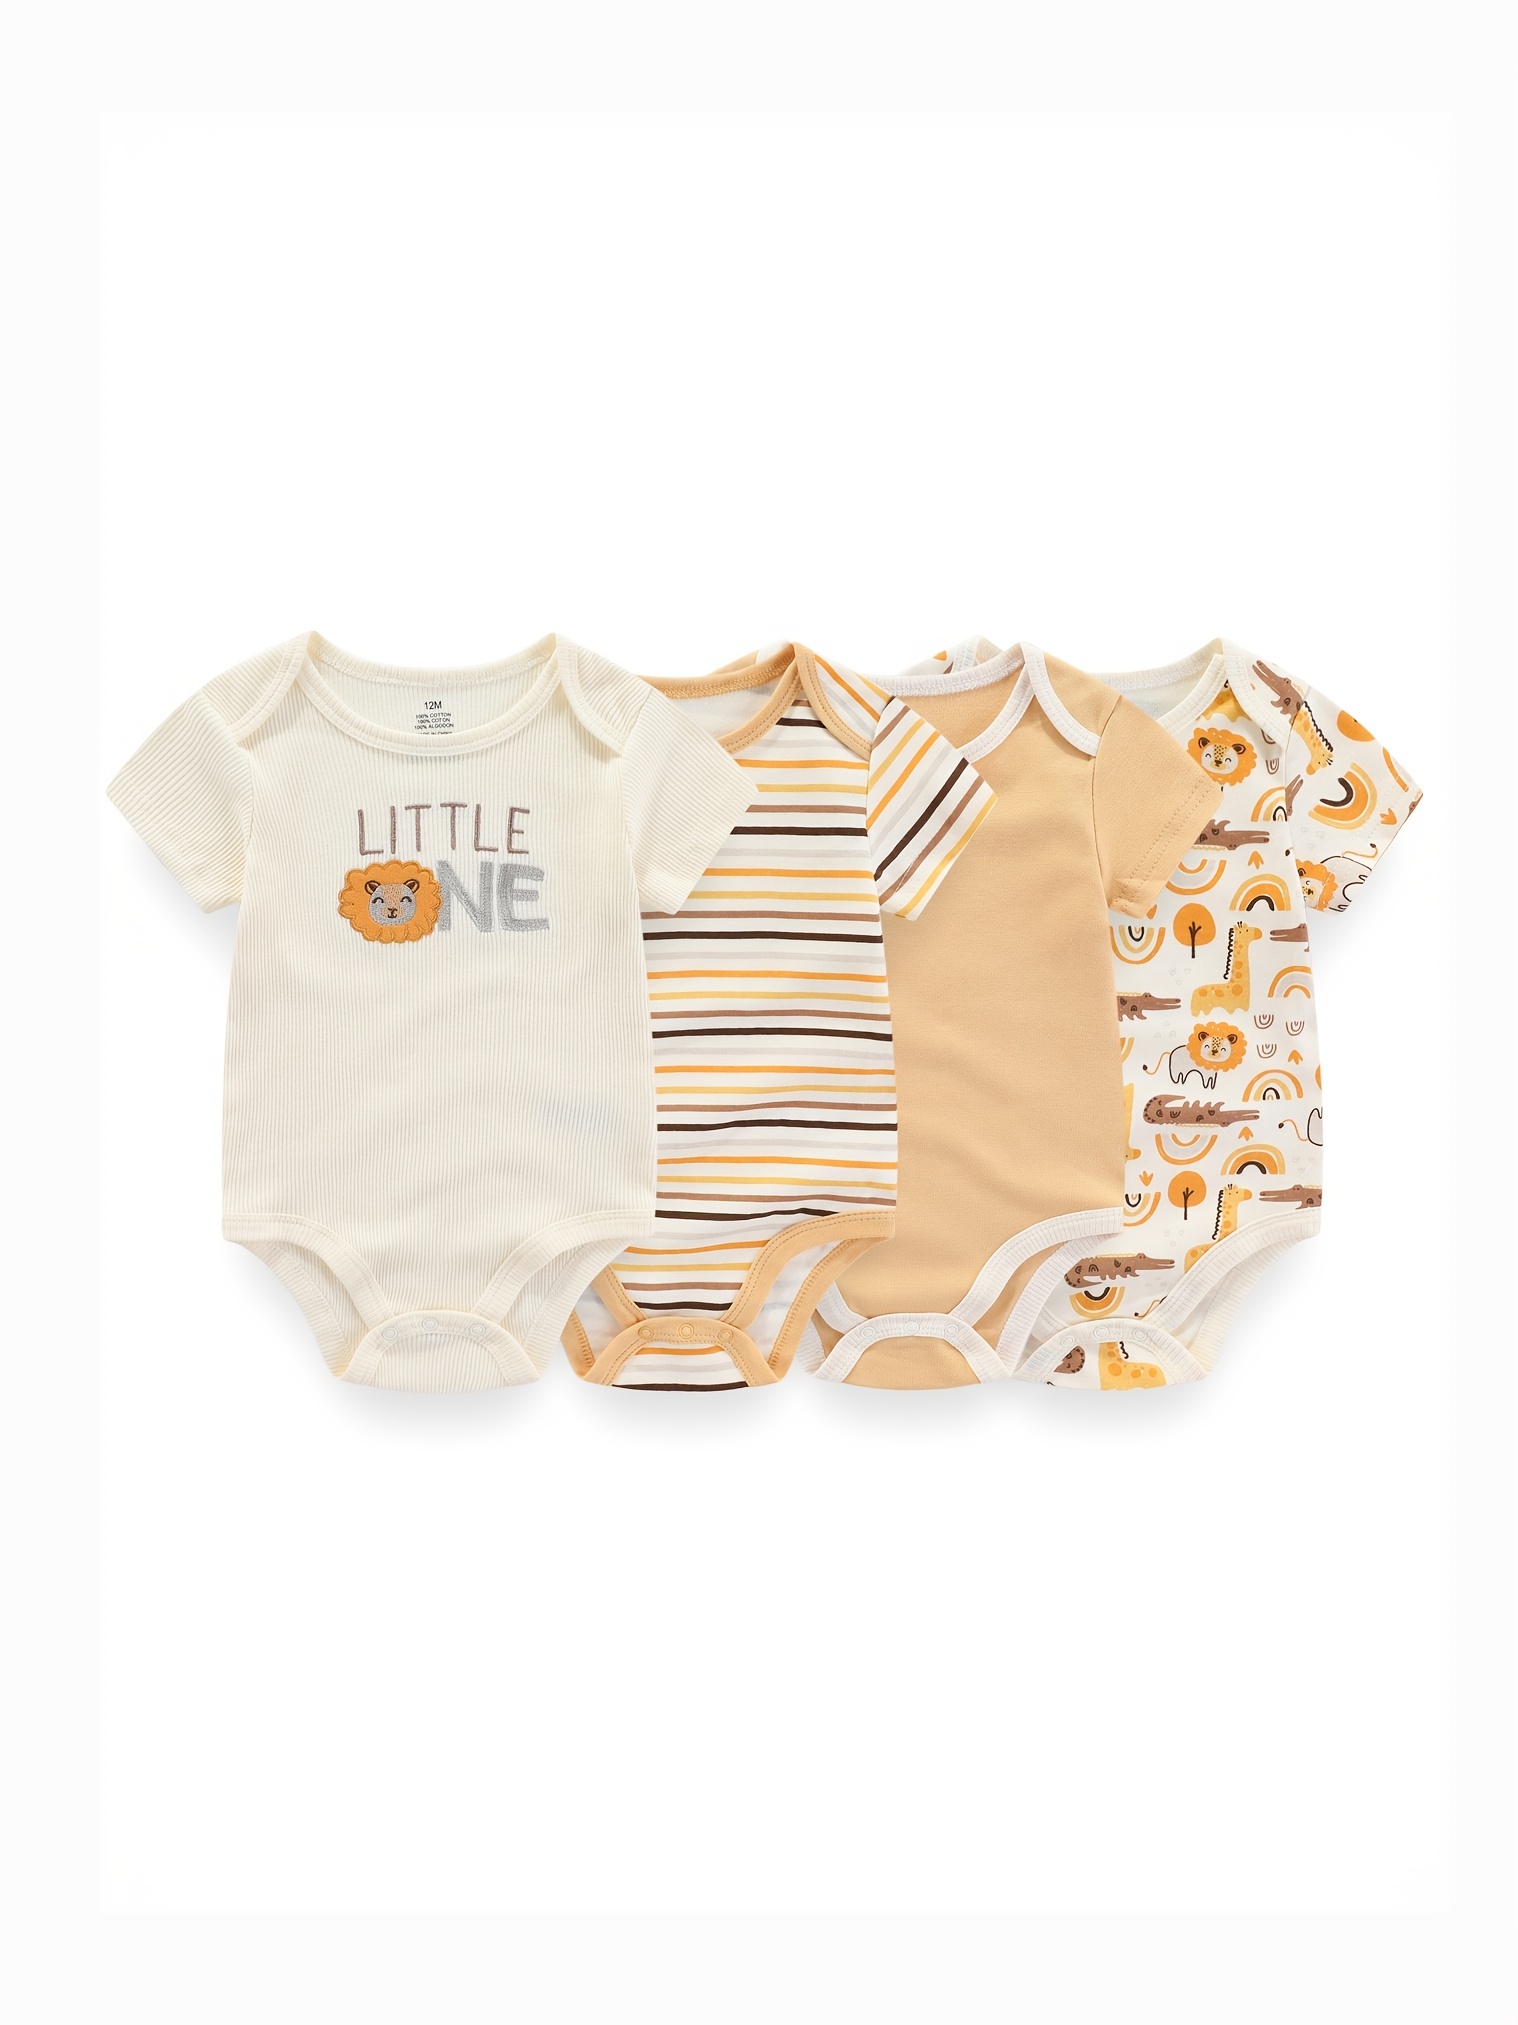 Baby Girls Clothes 3 6 pcs/lot pour nouveaux Cotton Short Sleeve Girl  Bodysuit 0-12 Months Newborn Boys Clothing Toddler